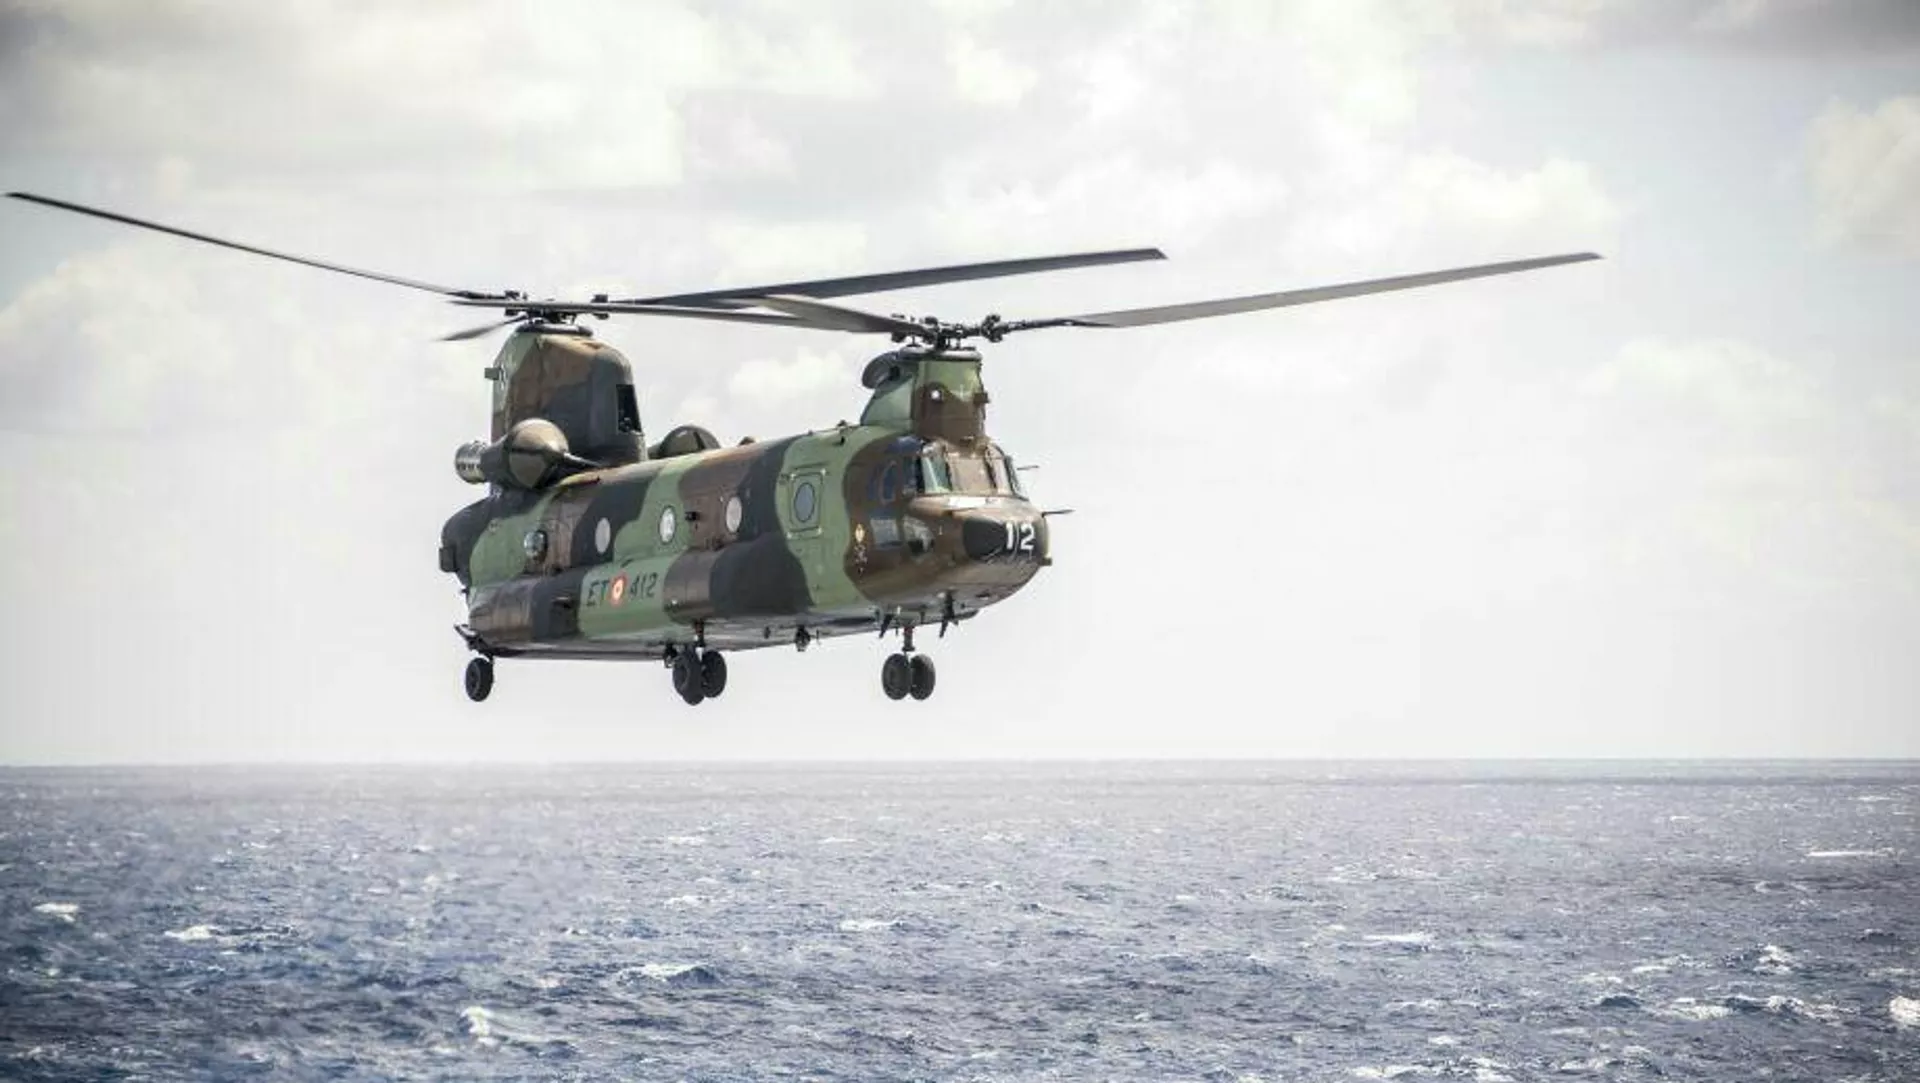  Exministro de Defensa británico intentó anular el contrato para la entrega de helicópteros de EEUU